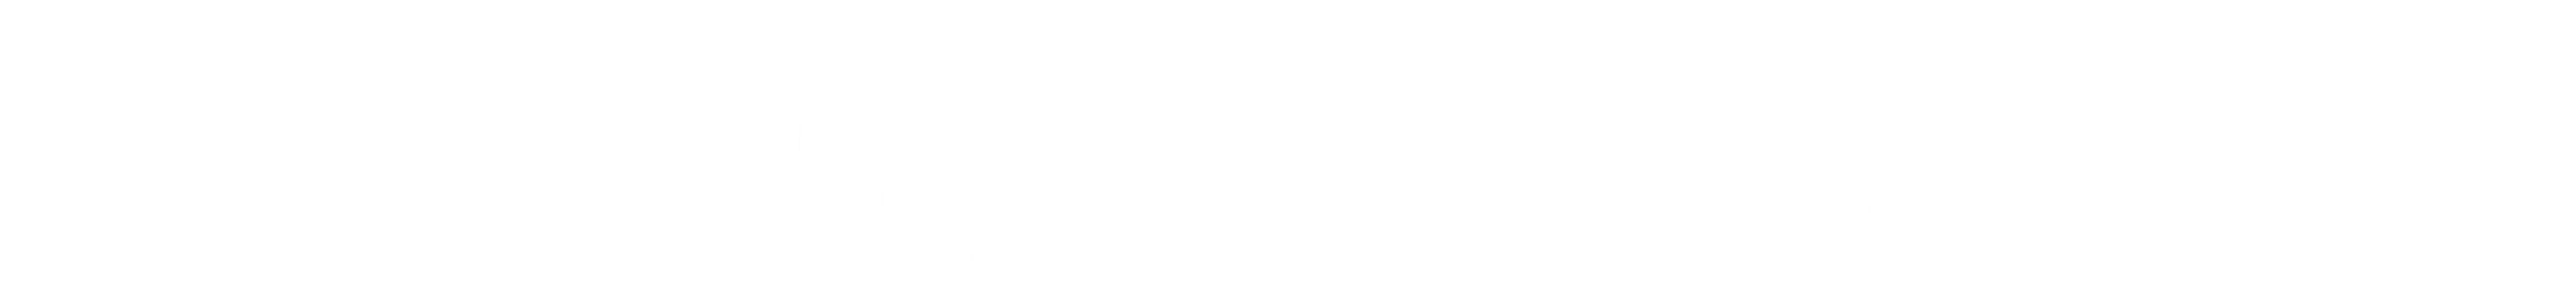 Financiado por la Unión Europea NextGenerationEu